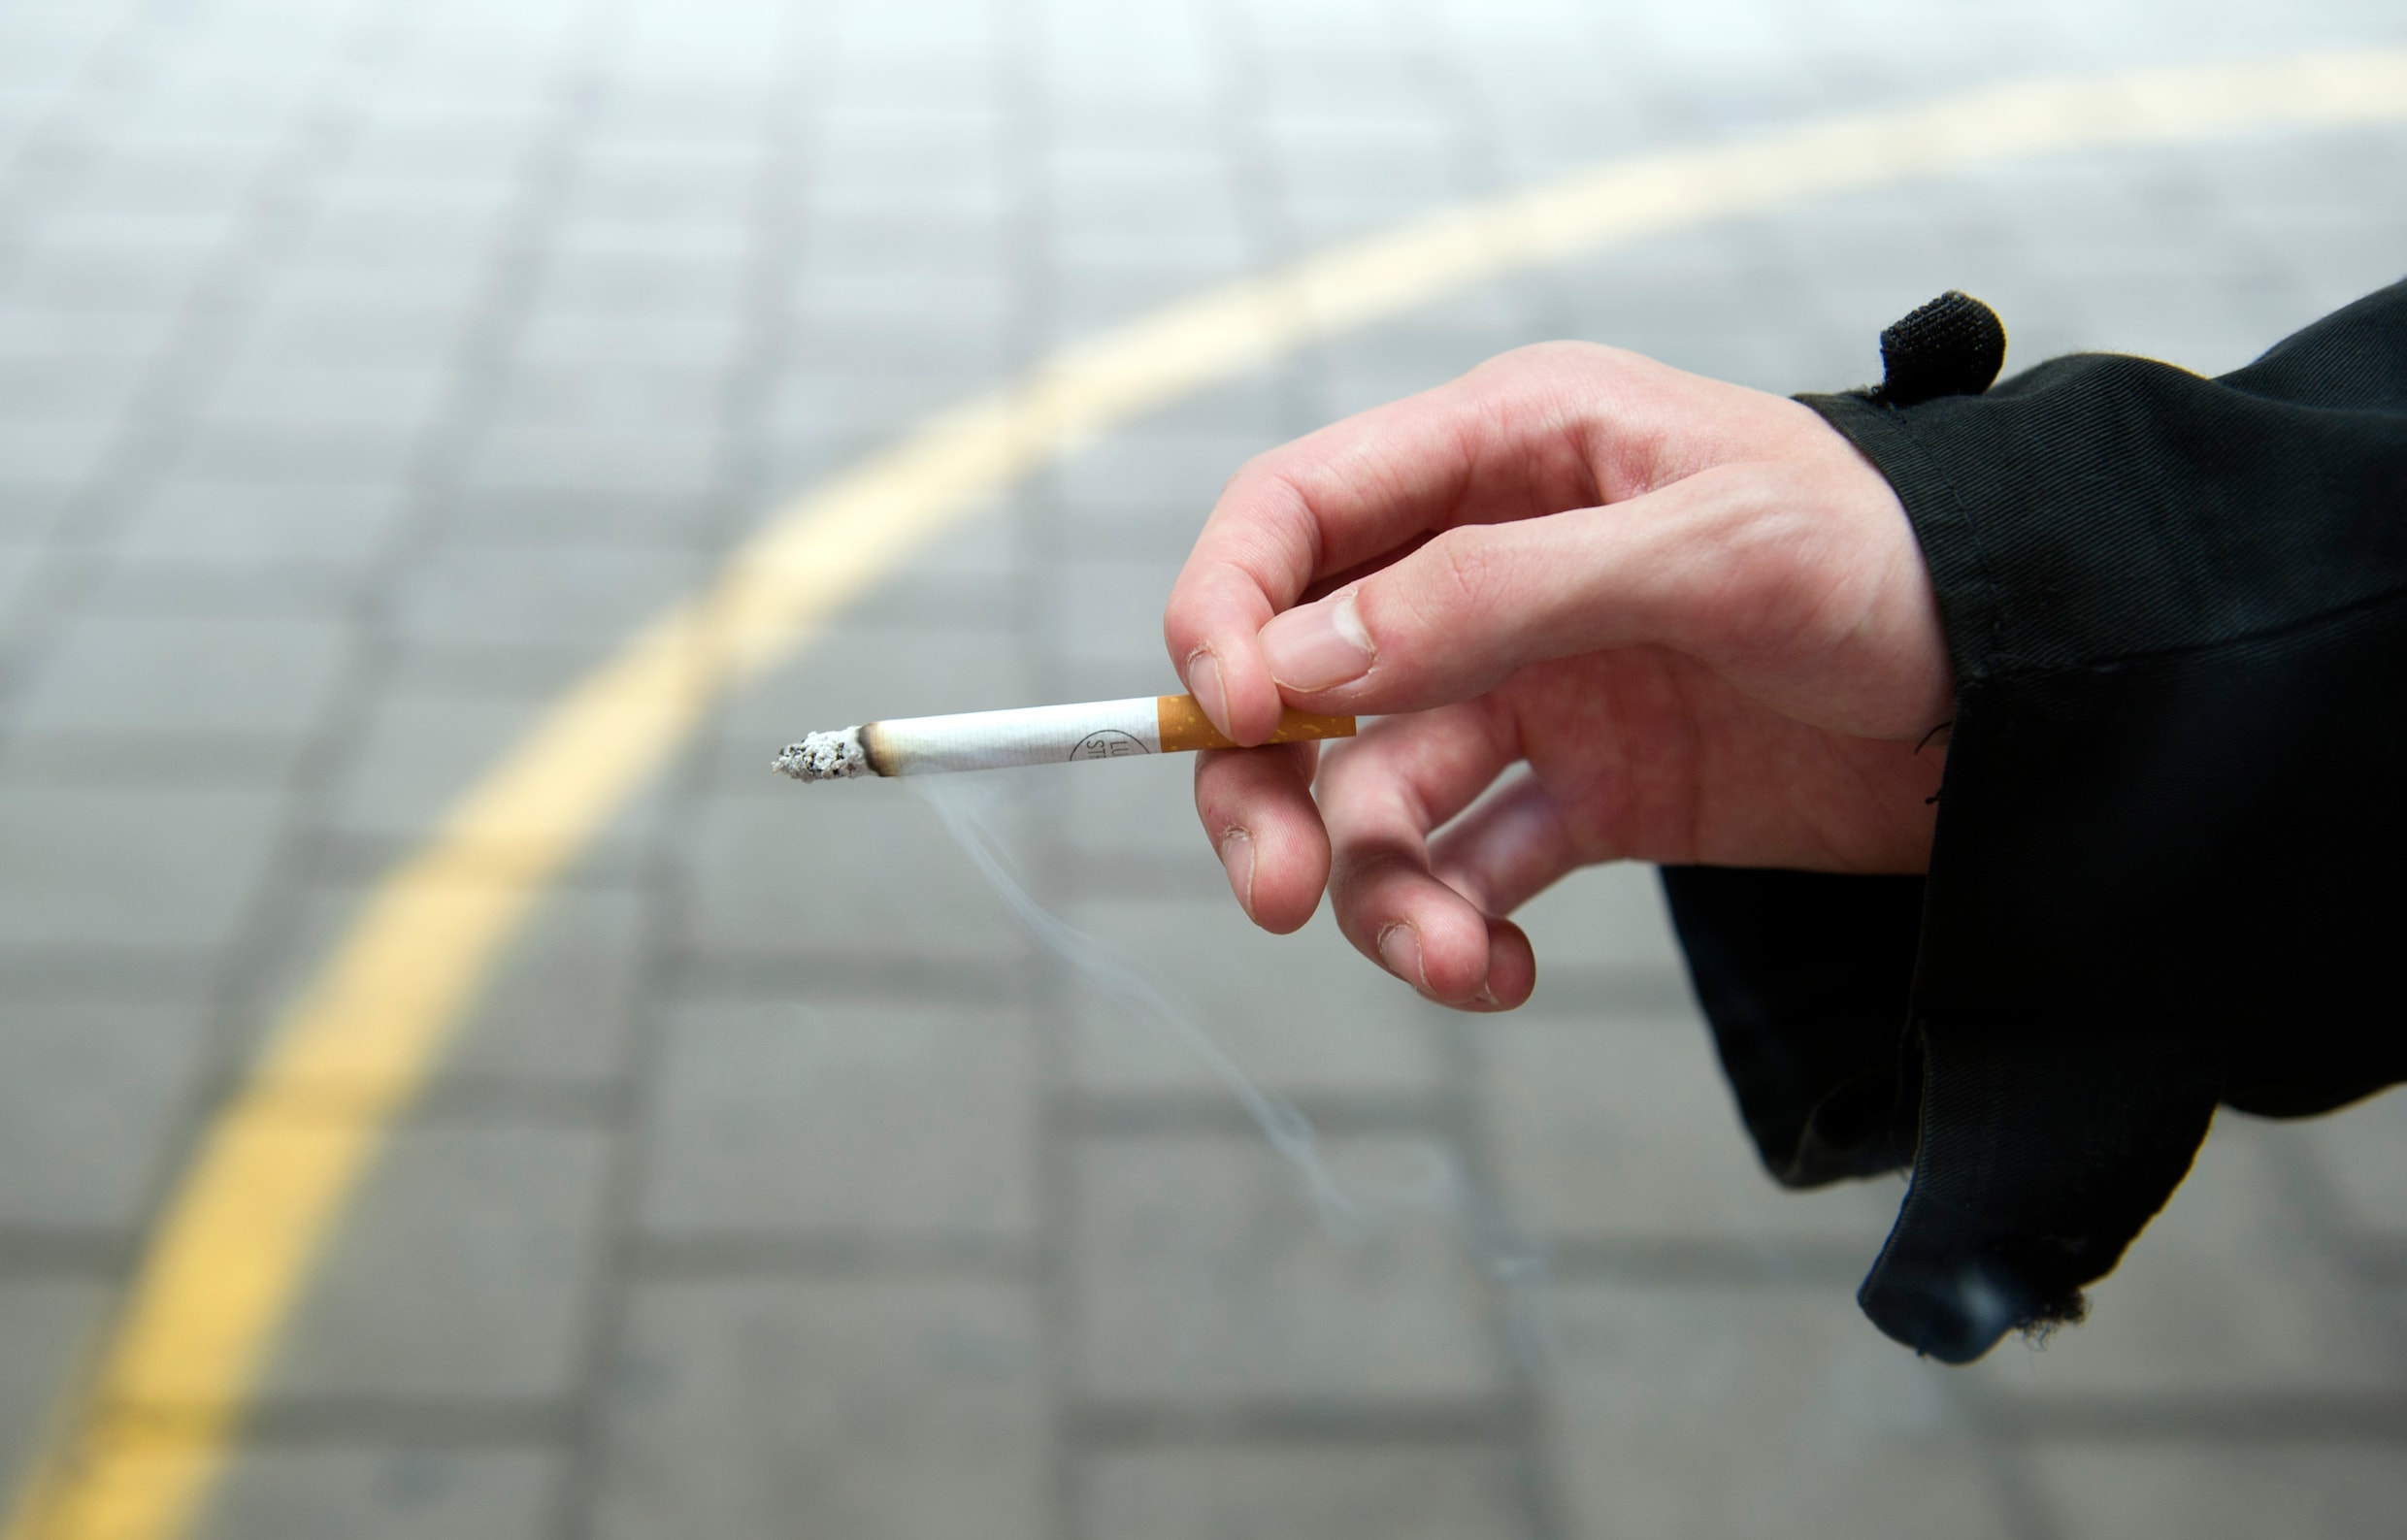 Milieuregels zijn de beste weg om een rookverbod op straat er doorheen te krijgen